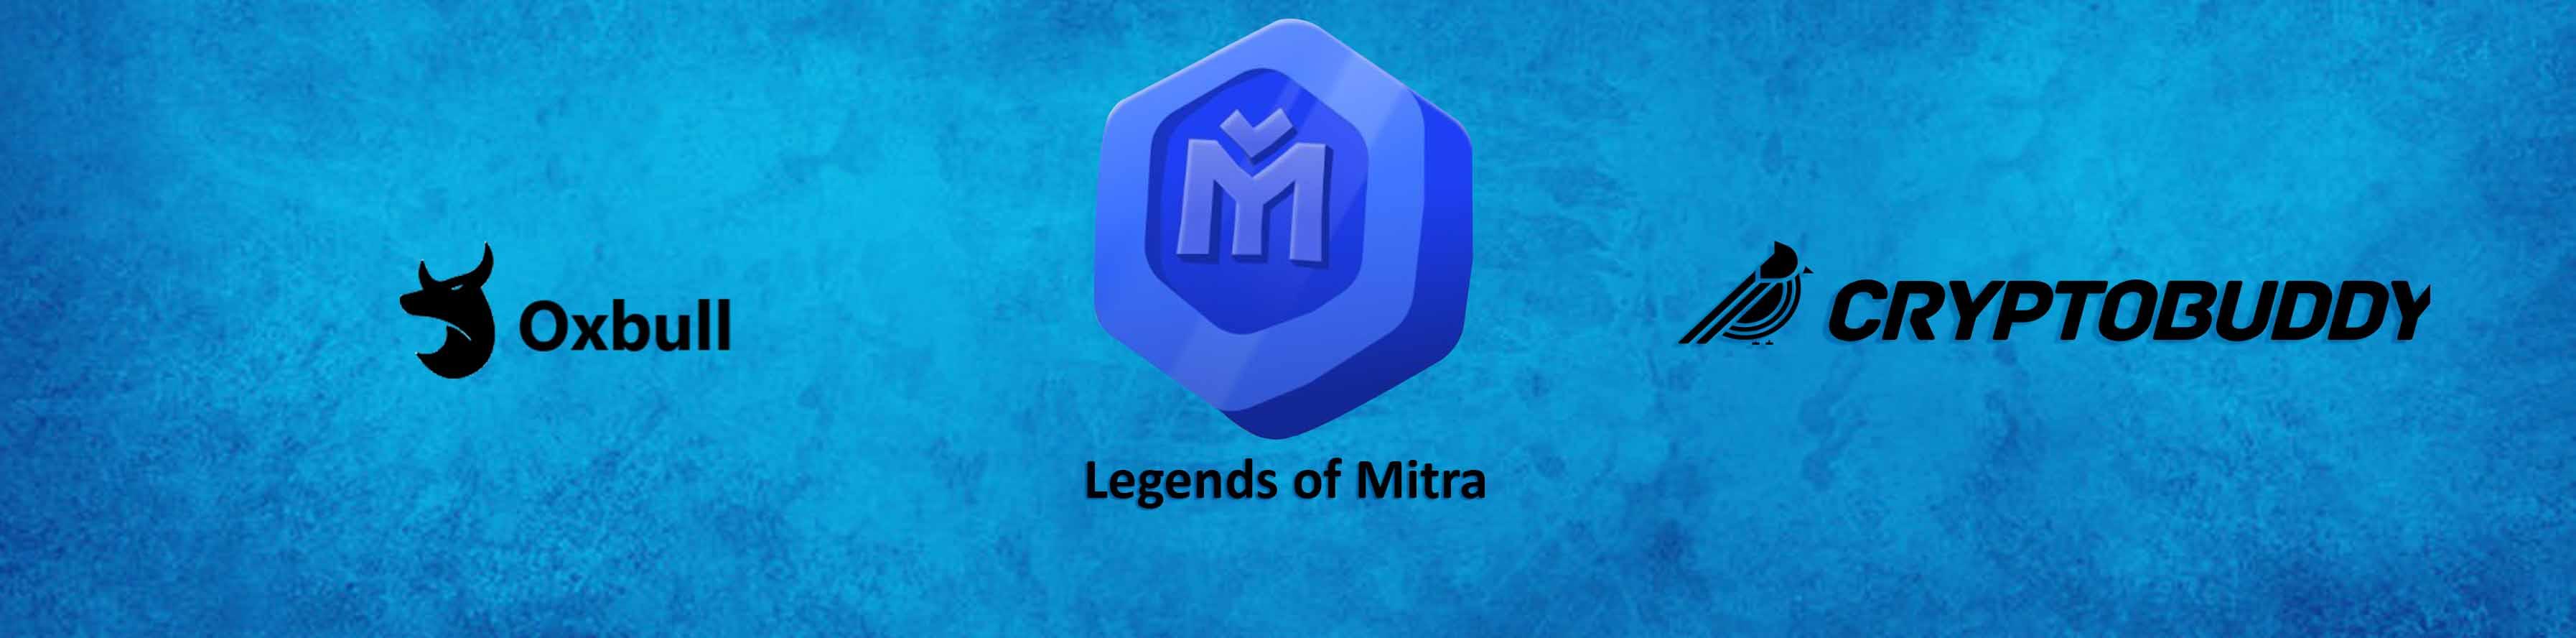 Legends of Mitra Oxbull IDO - Whitelist for Cryptobuddy Community